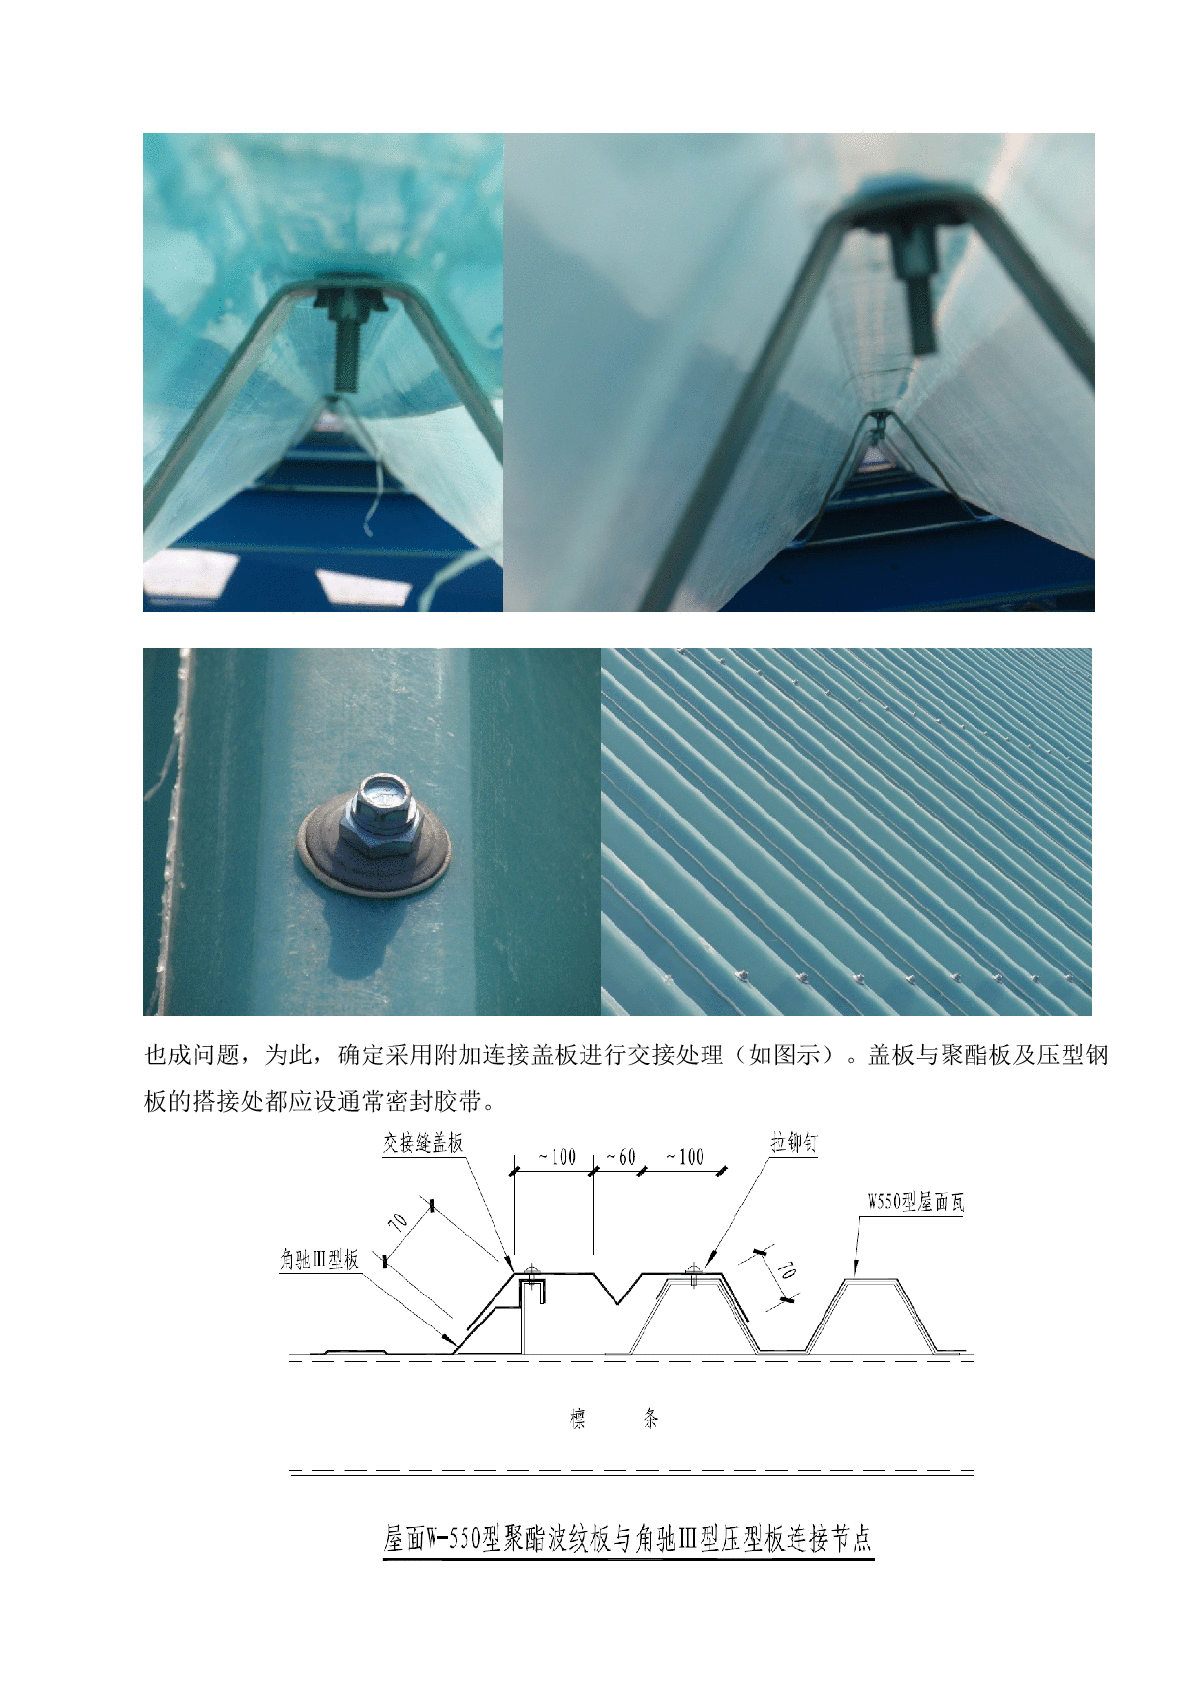 钢屋架系统双层保温屋面瓦安装技术总结-图二